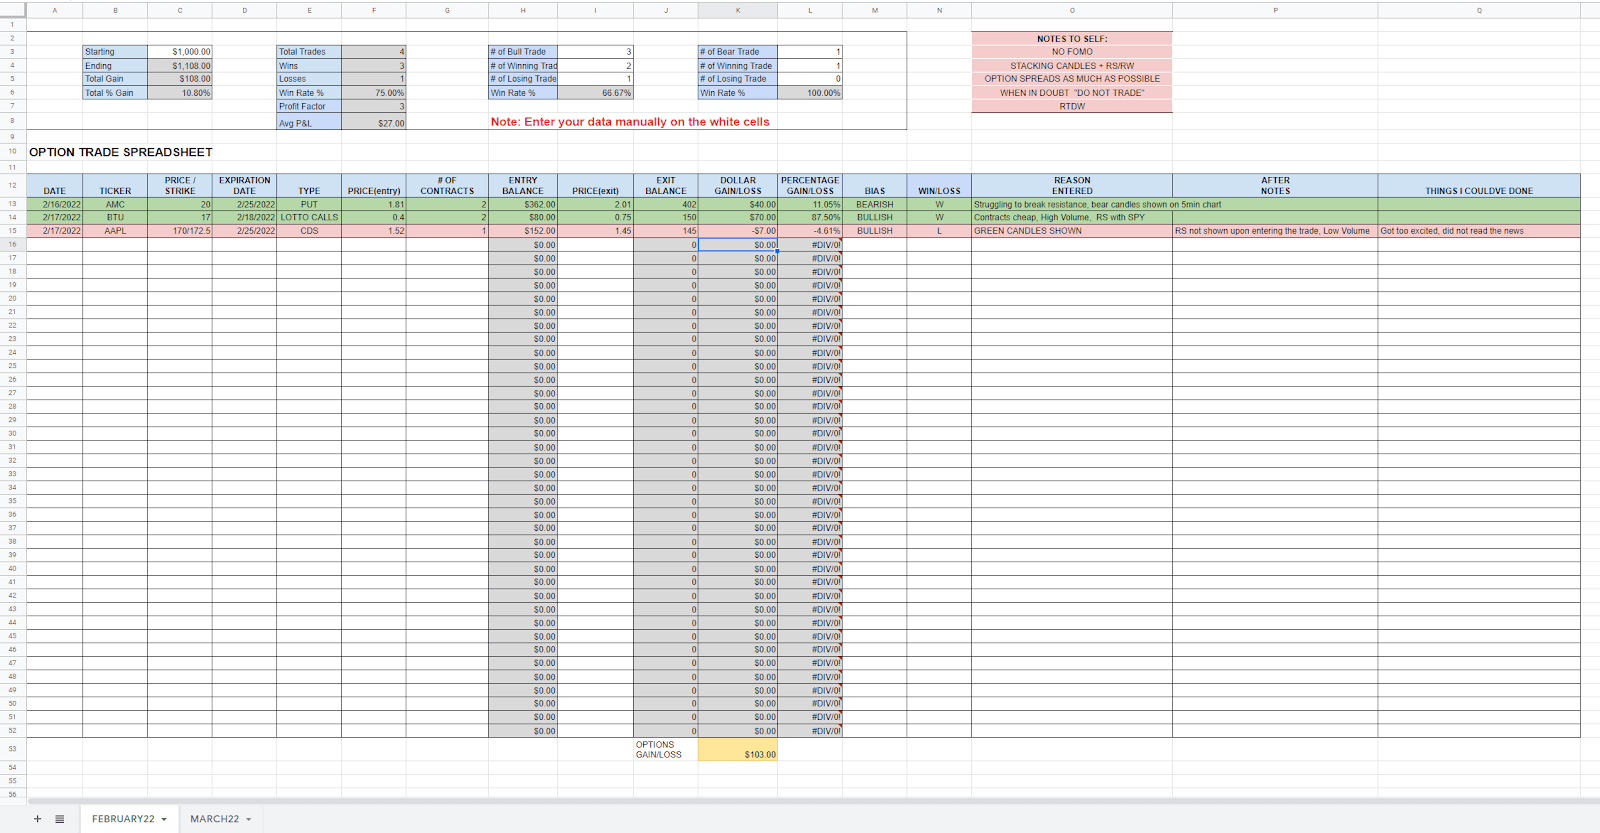 مثال على جدول بيانات مصمم لتنظيم سجلات التداول لشخص ما وتسهيل التحليل بعد التداول.